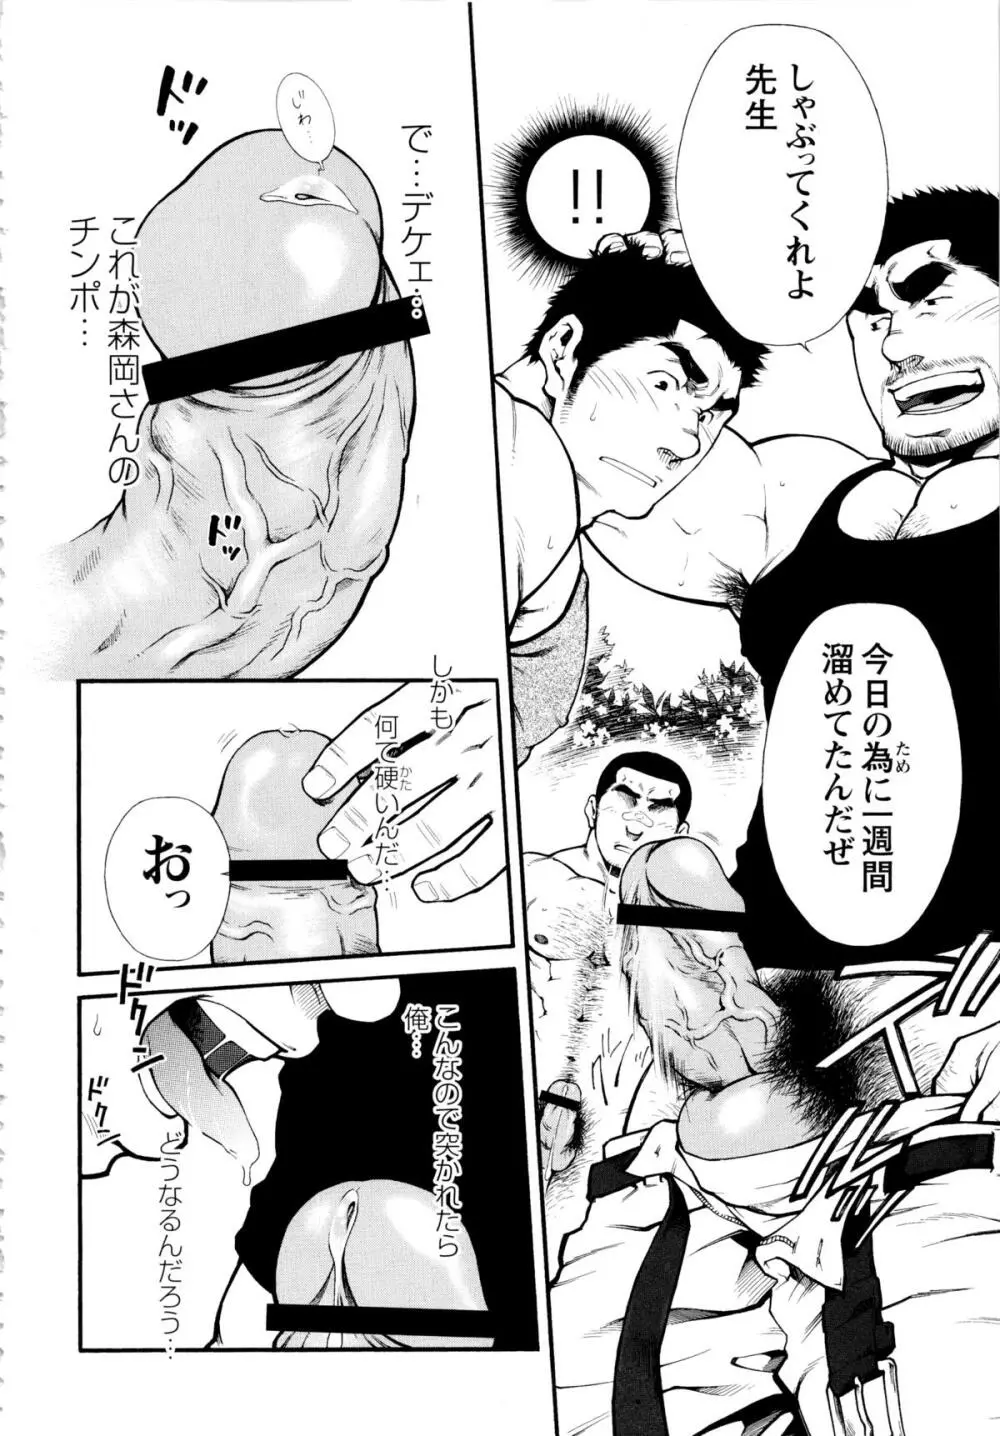 Osu Hachi no Mitsu – by -晃次郎 (Terujirou) 16ページ